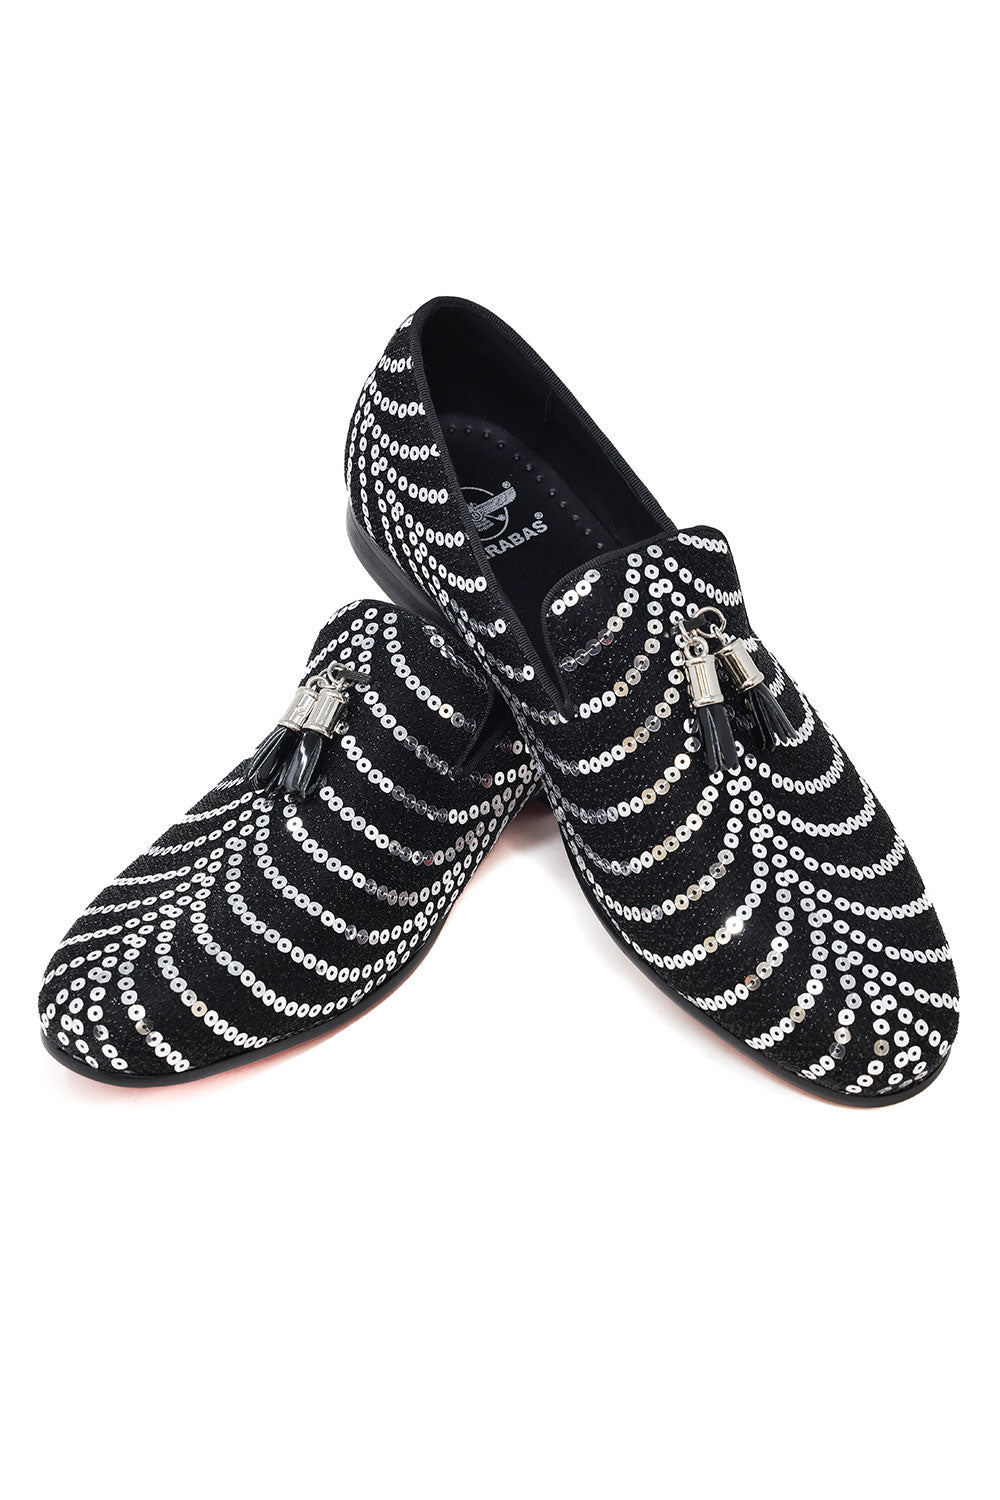 Barabas Men's Sequin Design Tassel Slip On Loafer Shoes Black Silver